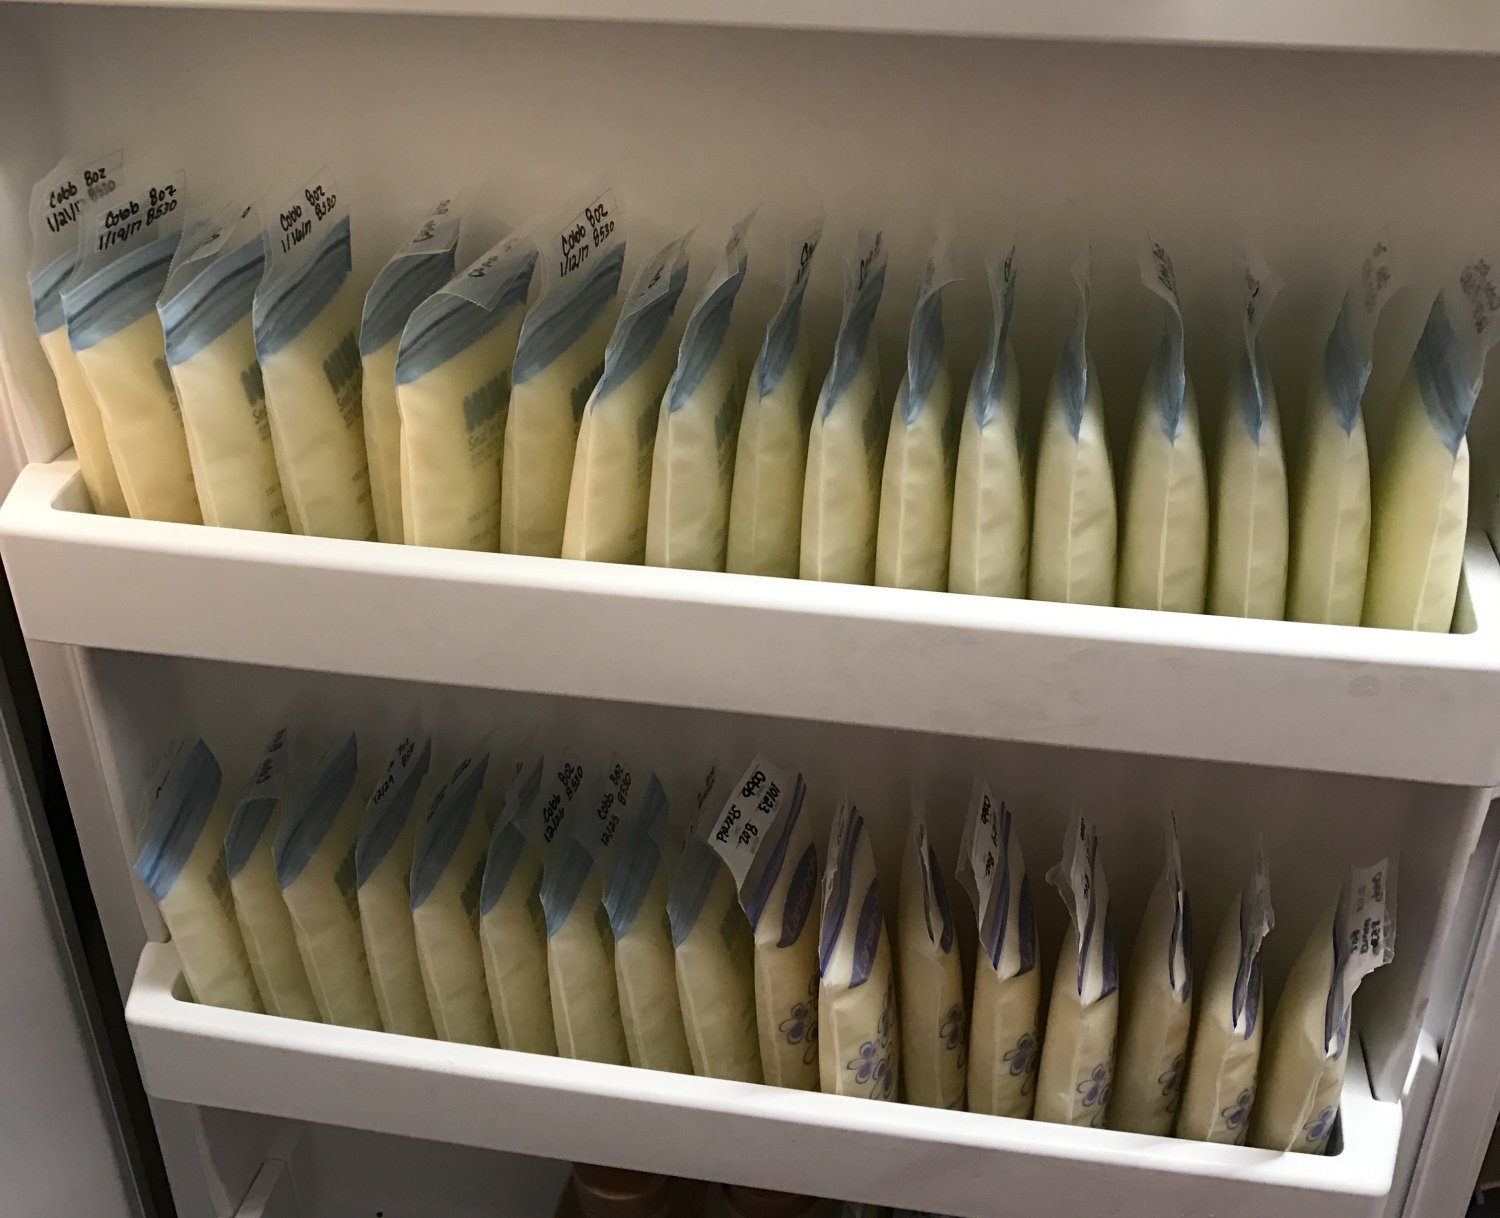 Two shelves on a freezer door full of frozen breastmilk bags